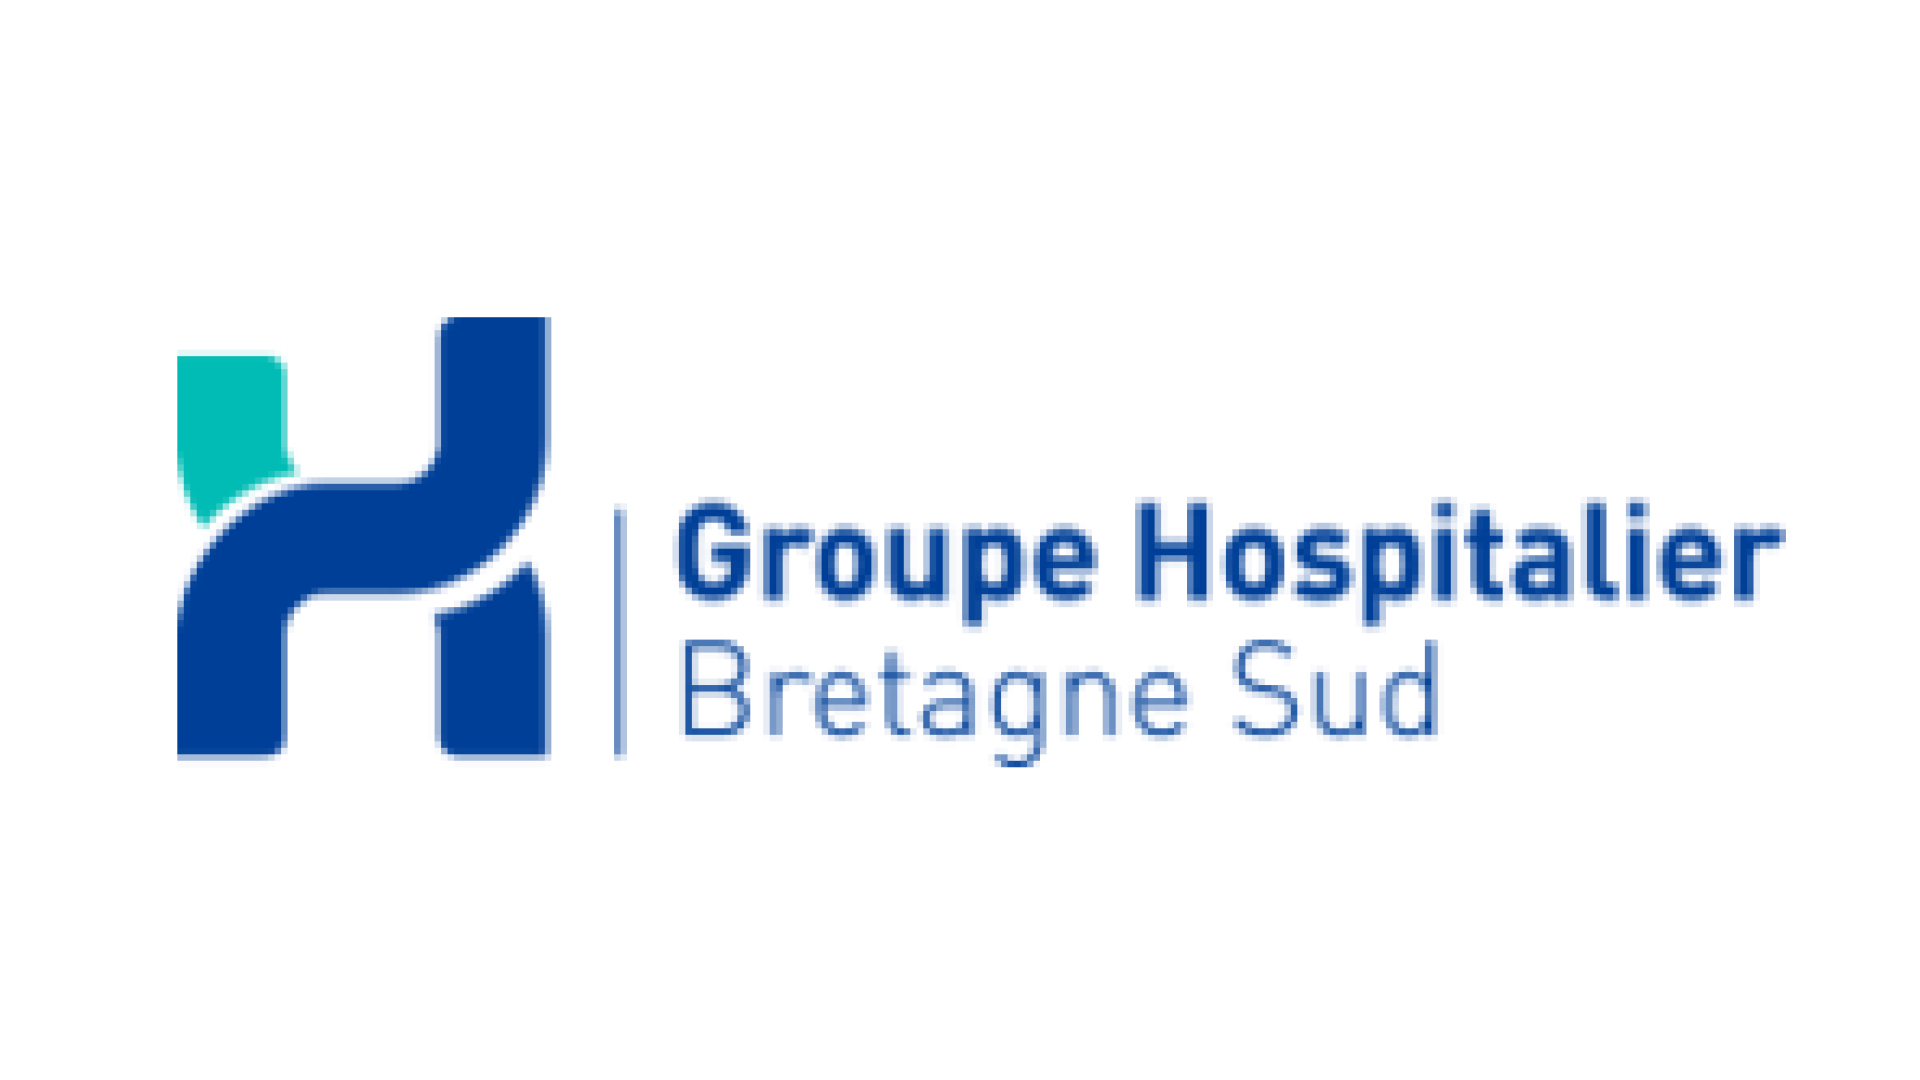 logo groupe hospitalier Bretagne sud 